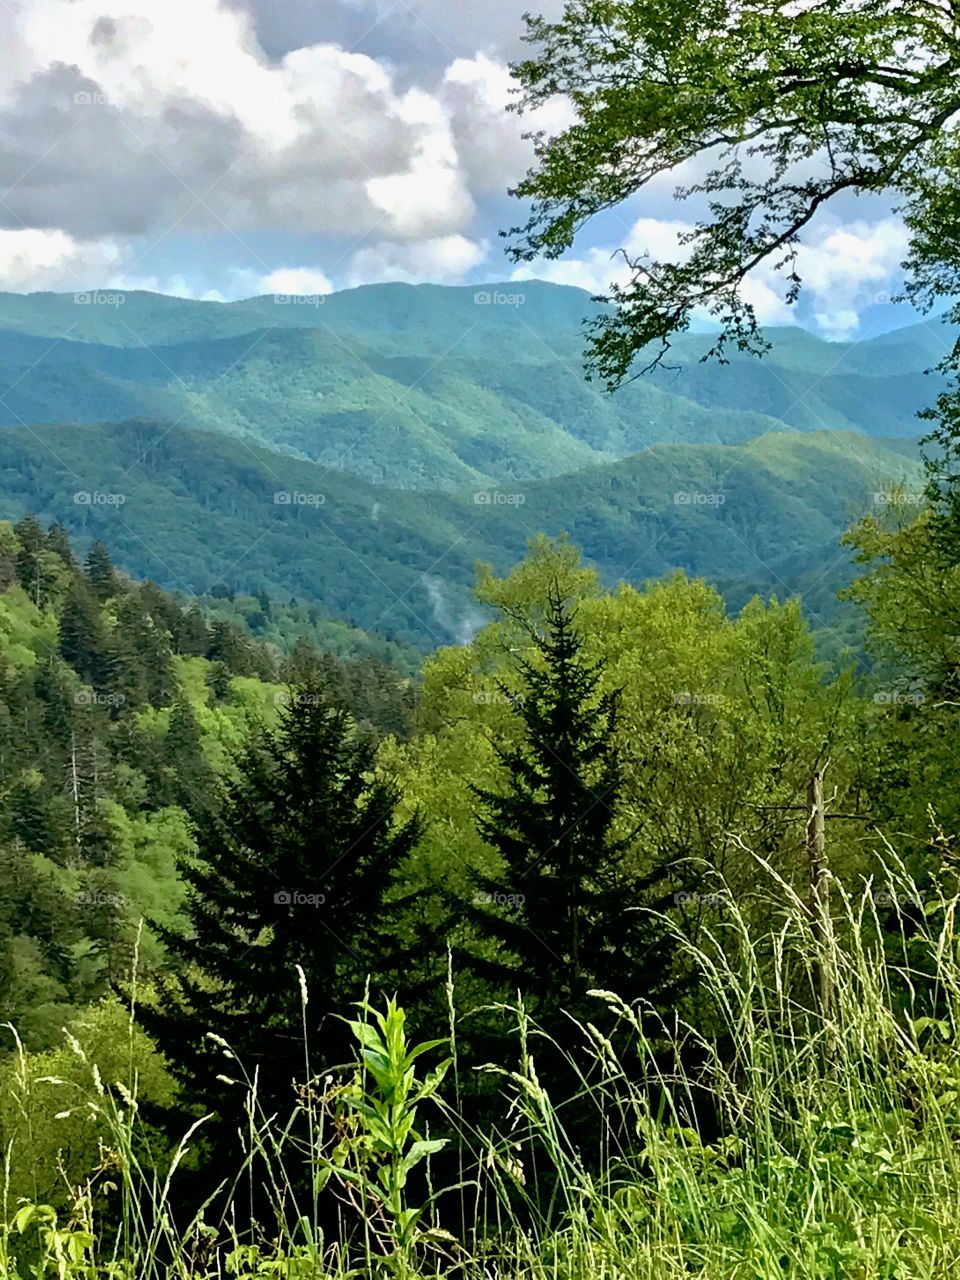 Smoky Mountain majesty 